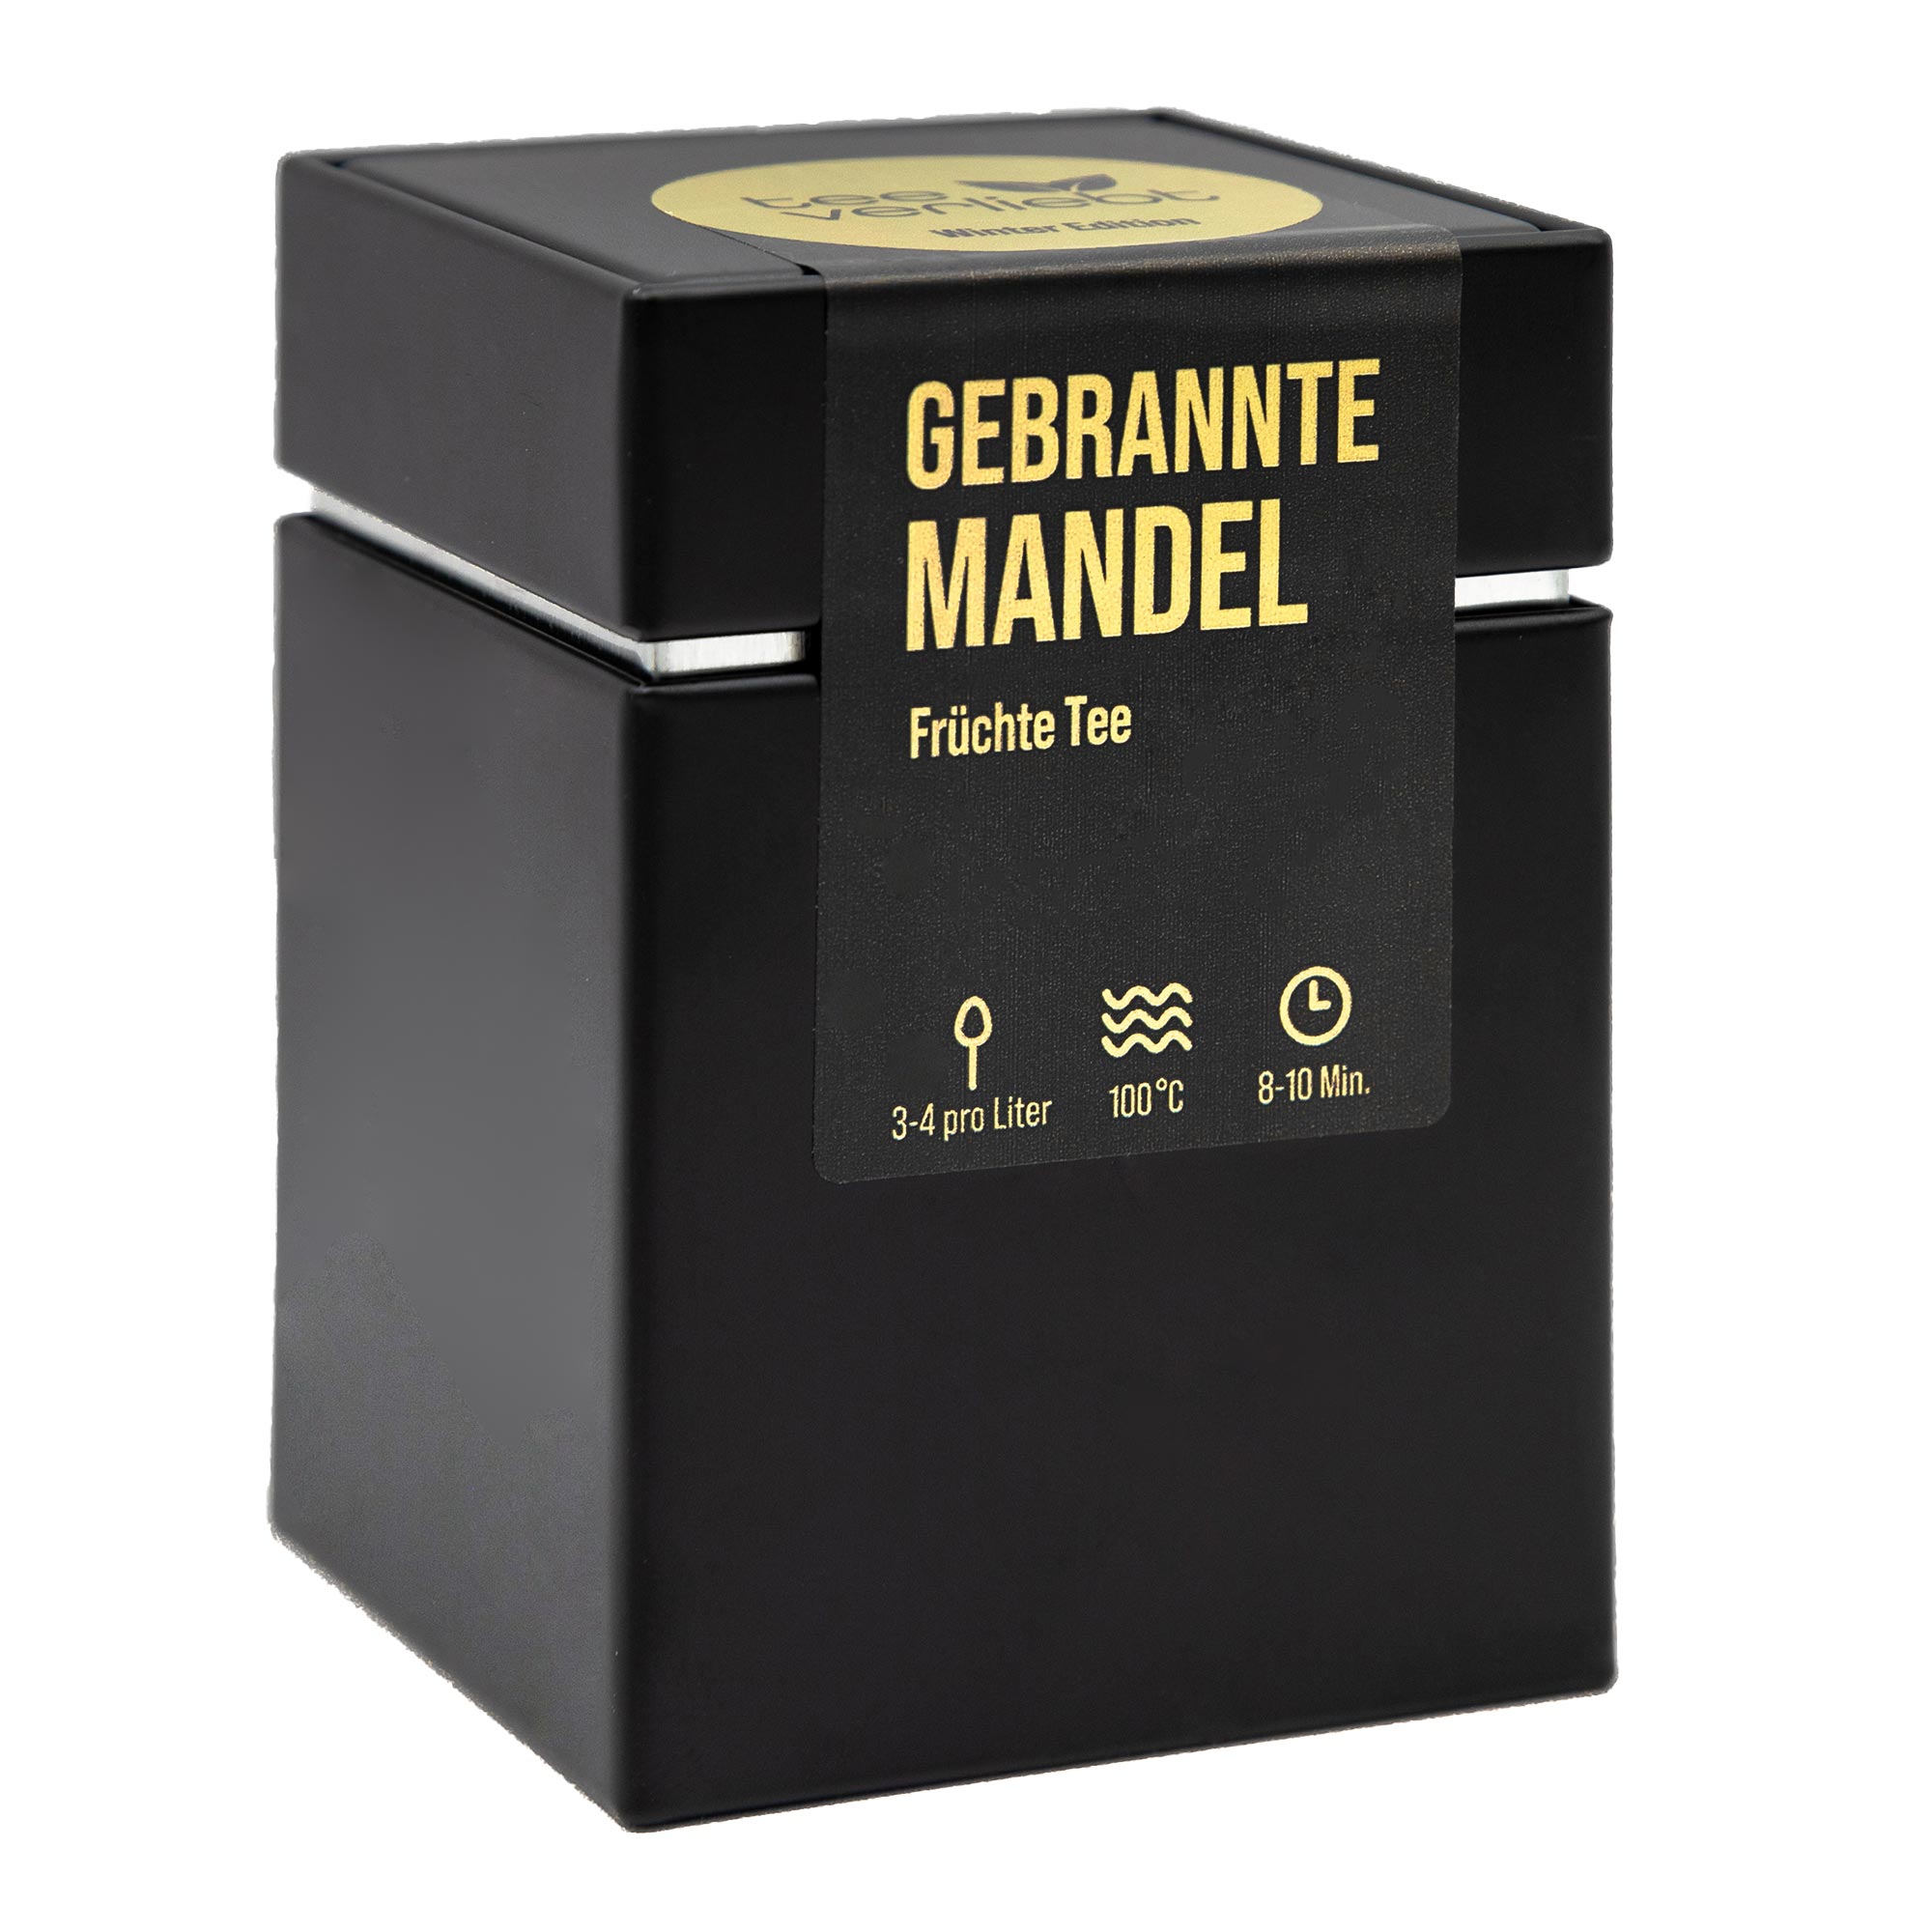 Gebrannte Mandel Geschenkdose | 80g Früchtetee - Winter Edition